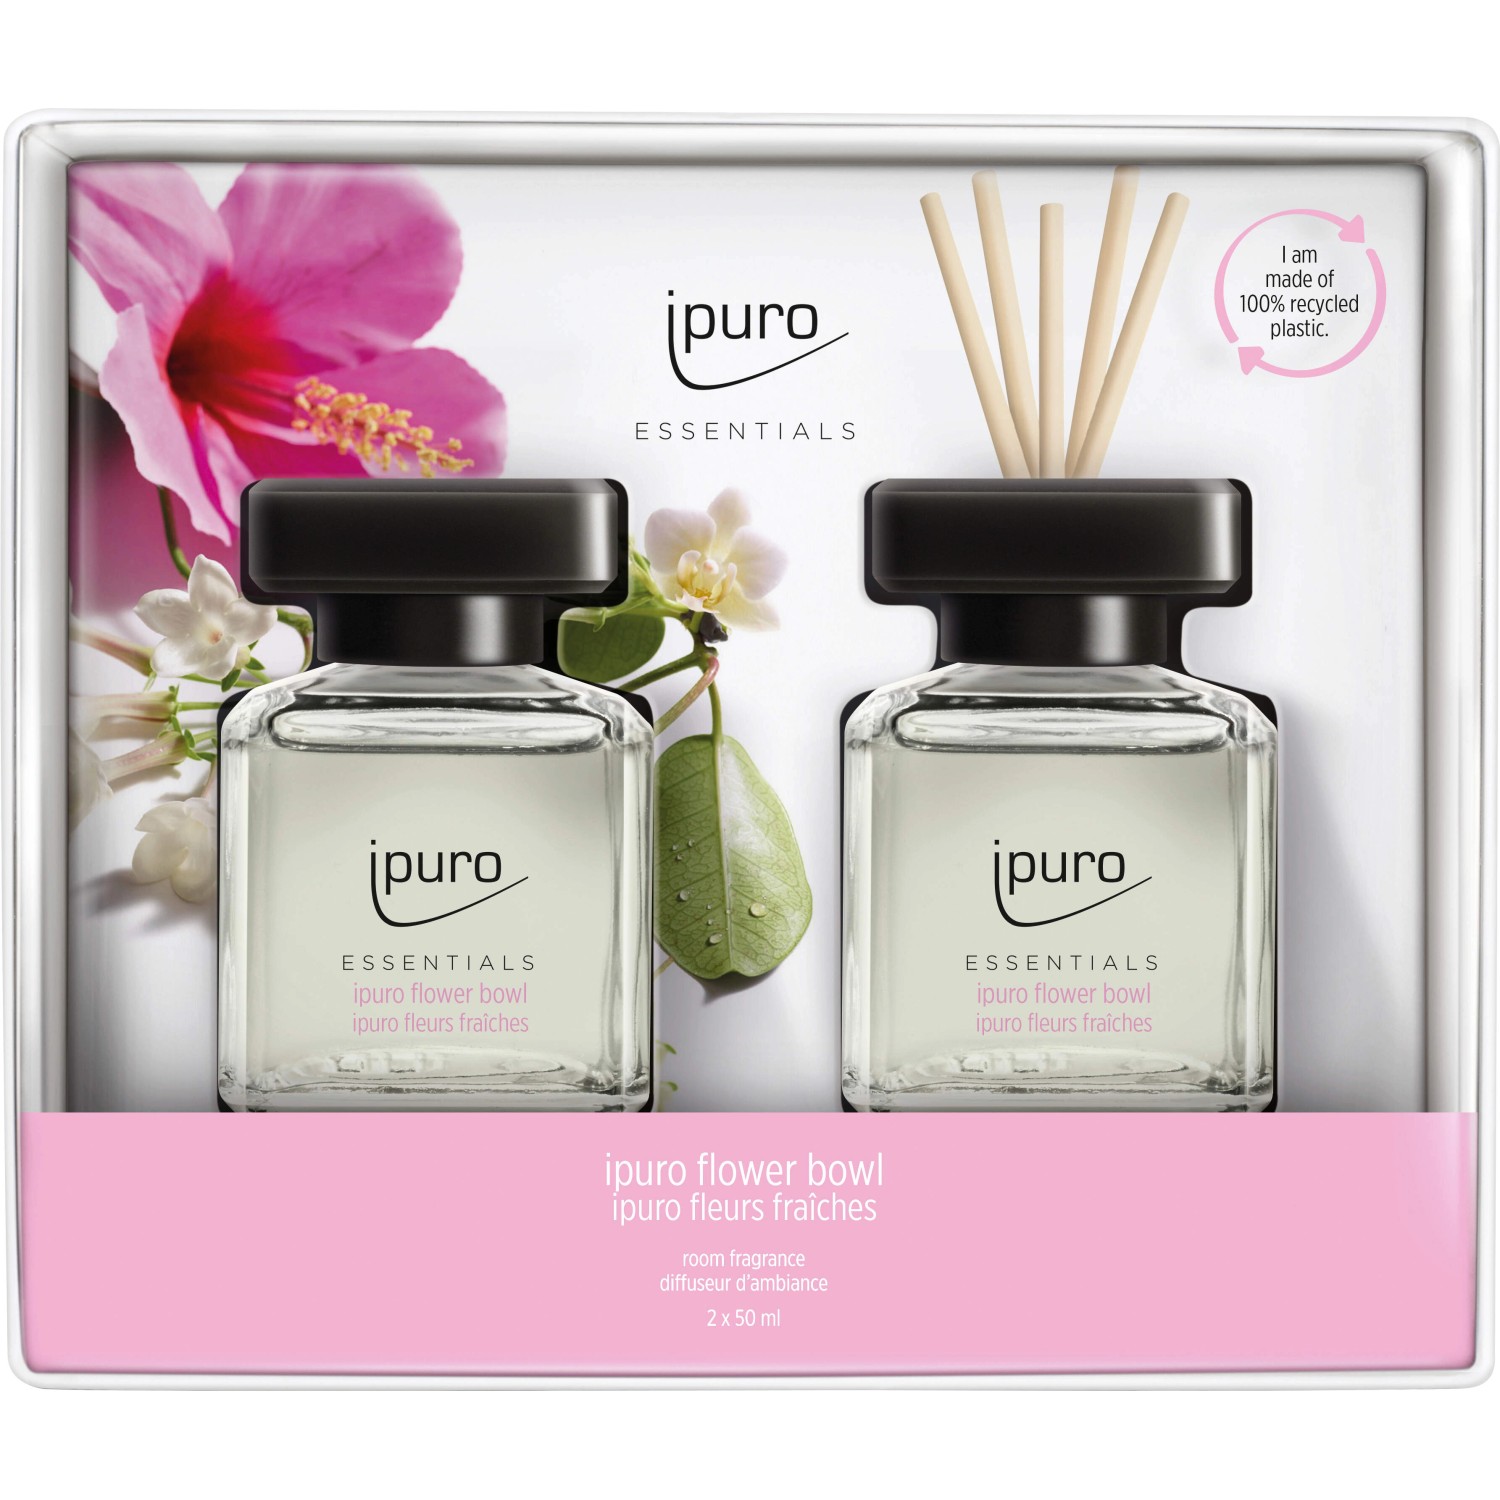 Ipuro Raumduft Essentials Vanilla Traum 50 ml kaufen bei OBI